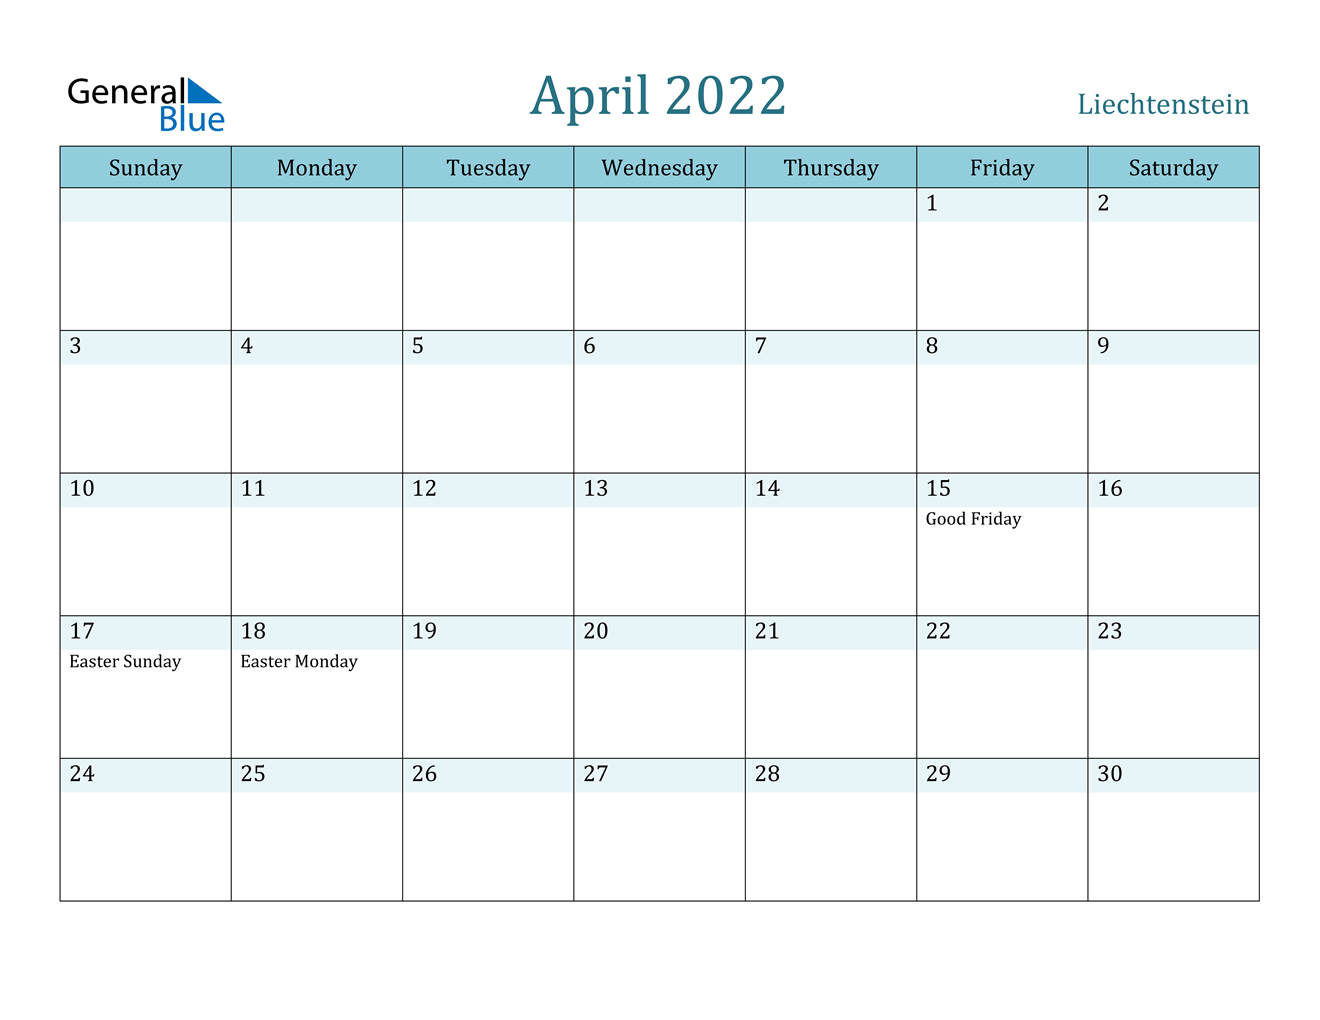 April 2022 Calendar - Liechtenstein